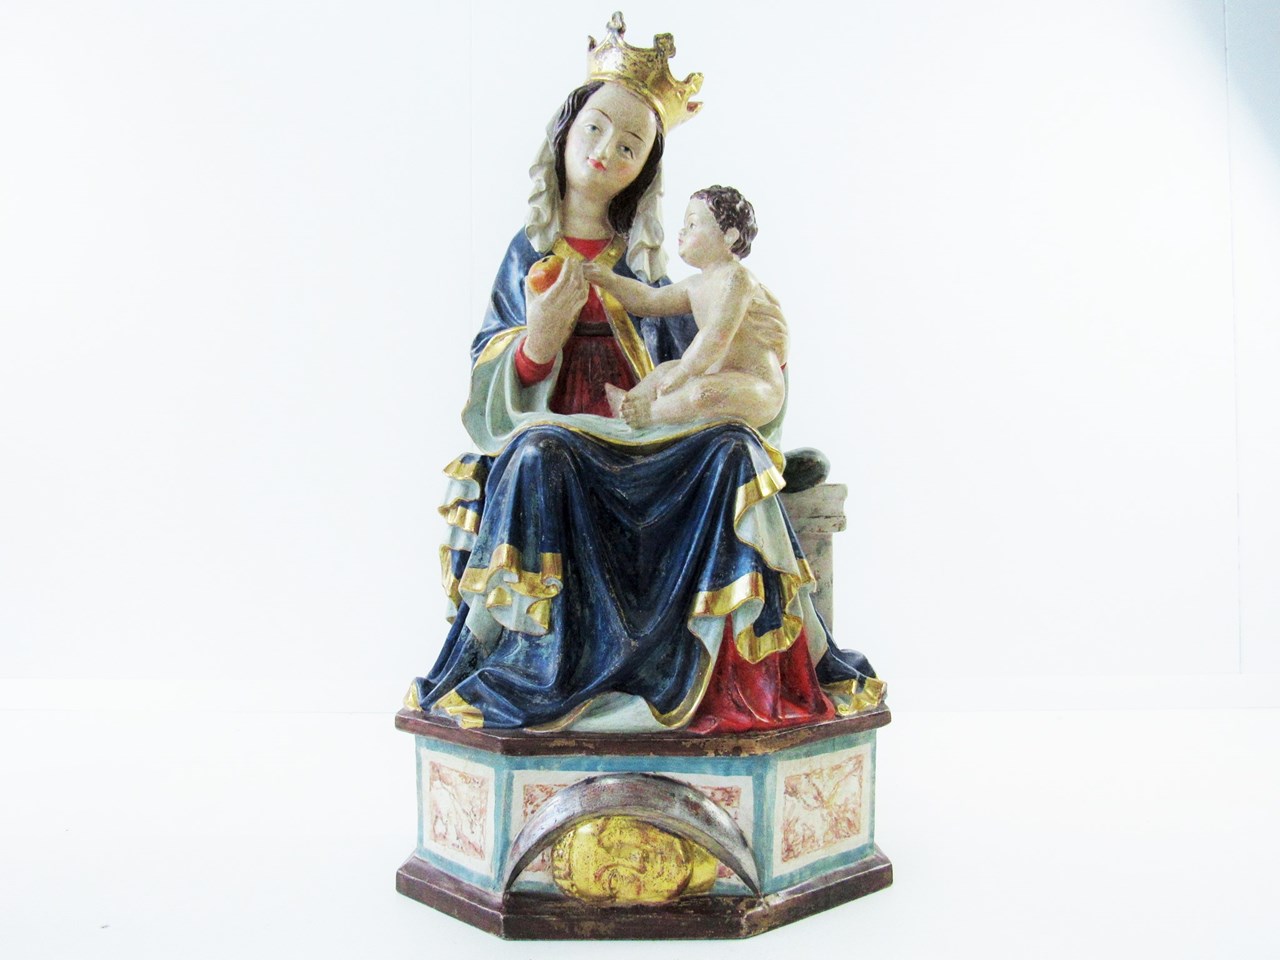 Afbeelding van Heiligenfigur sitzende Madonna von Seeon, Holz, Italien 2. Hälfte 20. Jh. / 60 cm